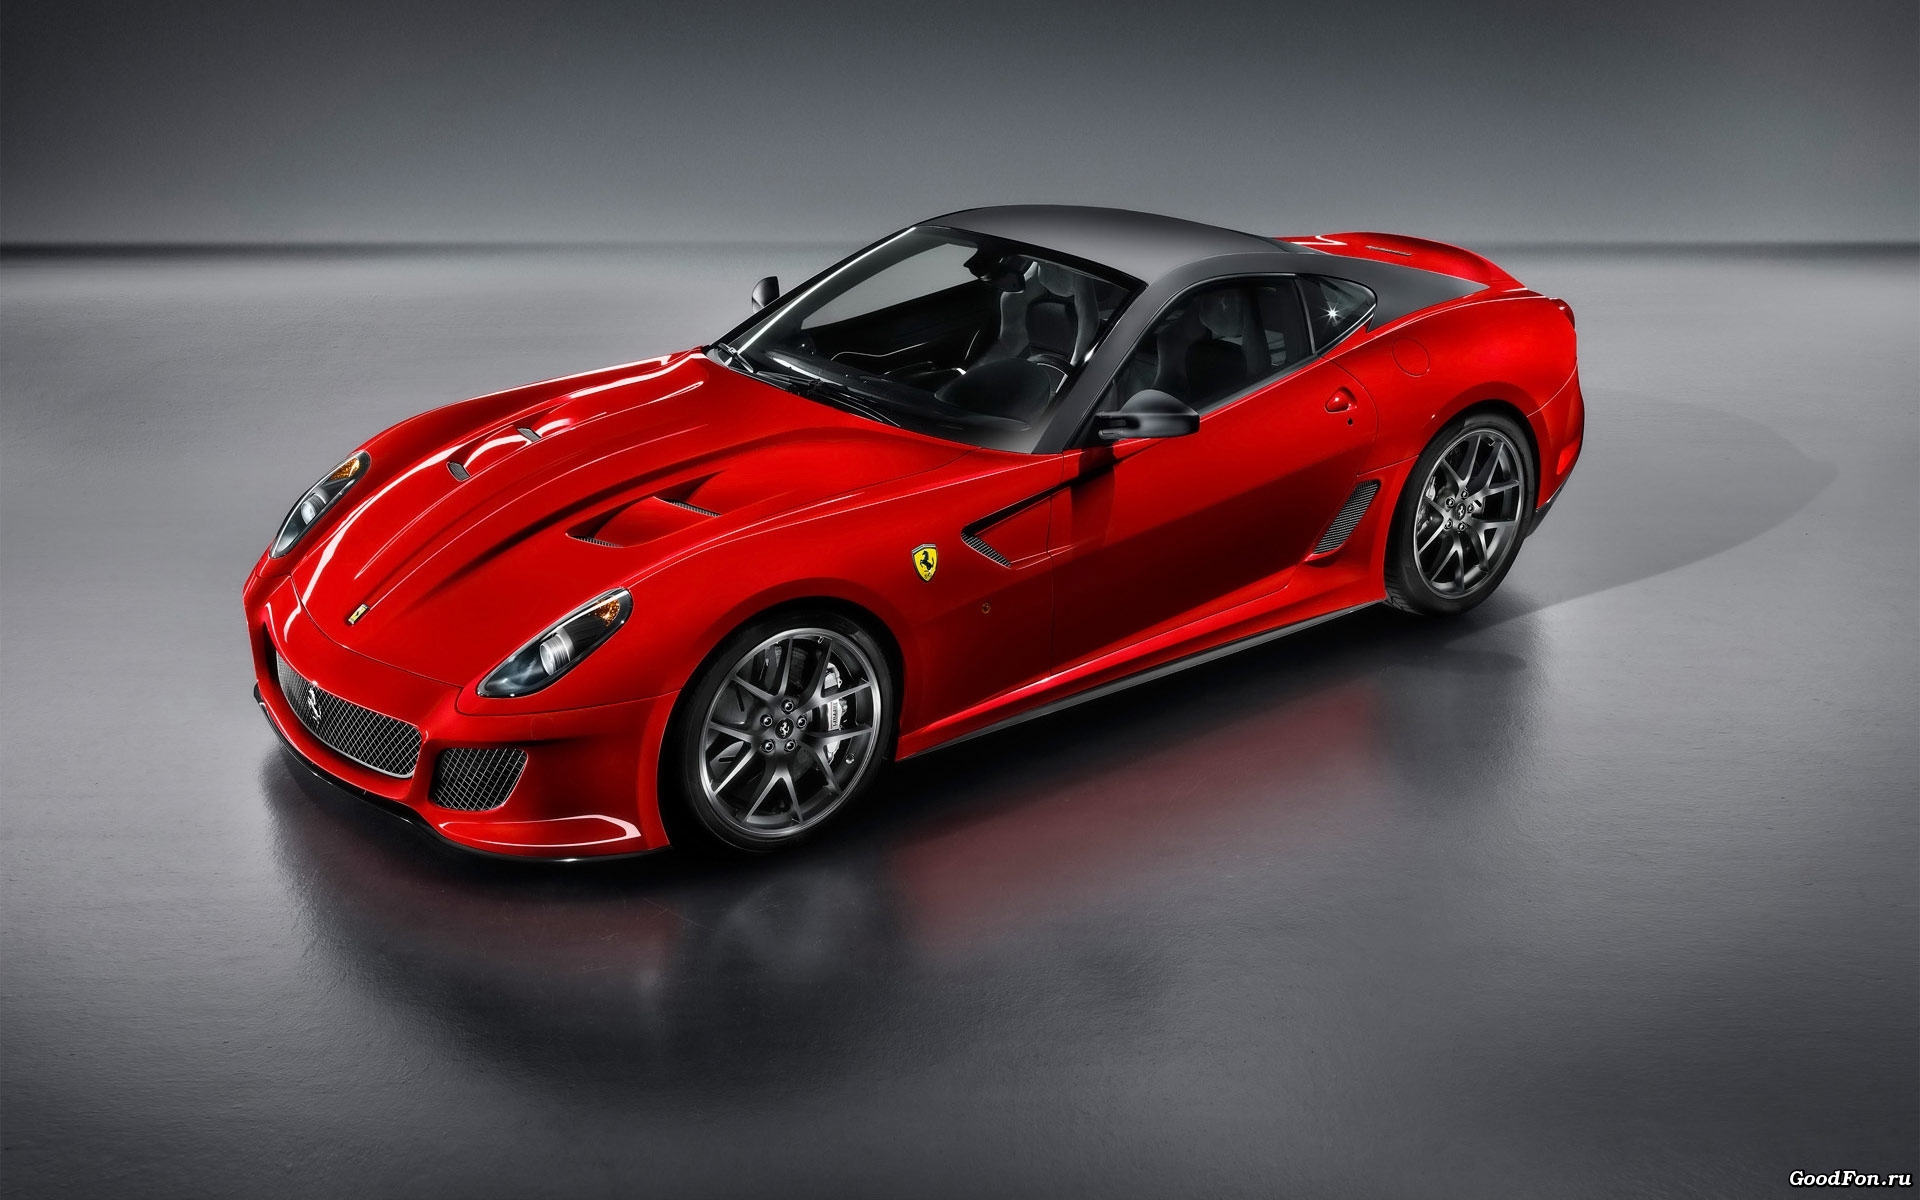 Download mobile wallpaper Auto, Transport, Ferrari for free.